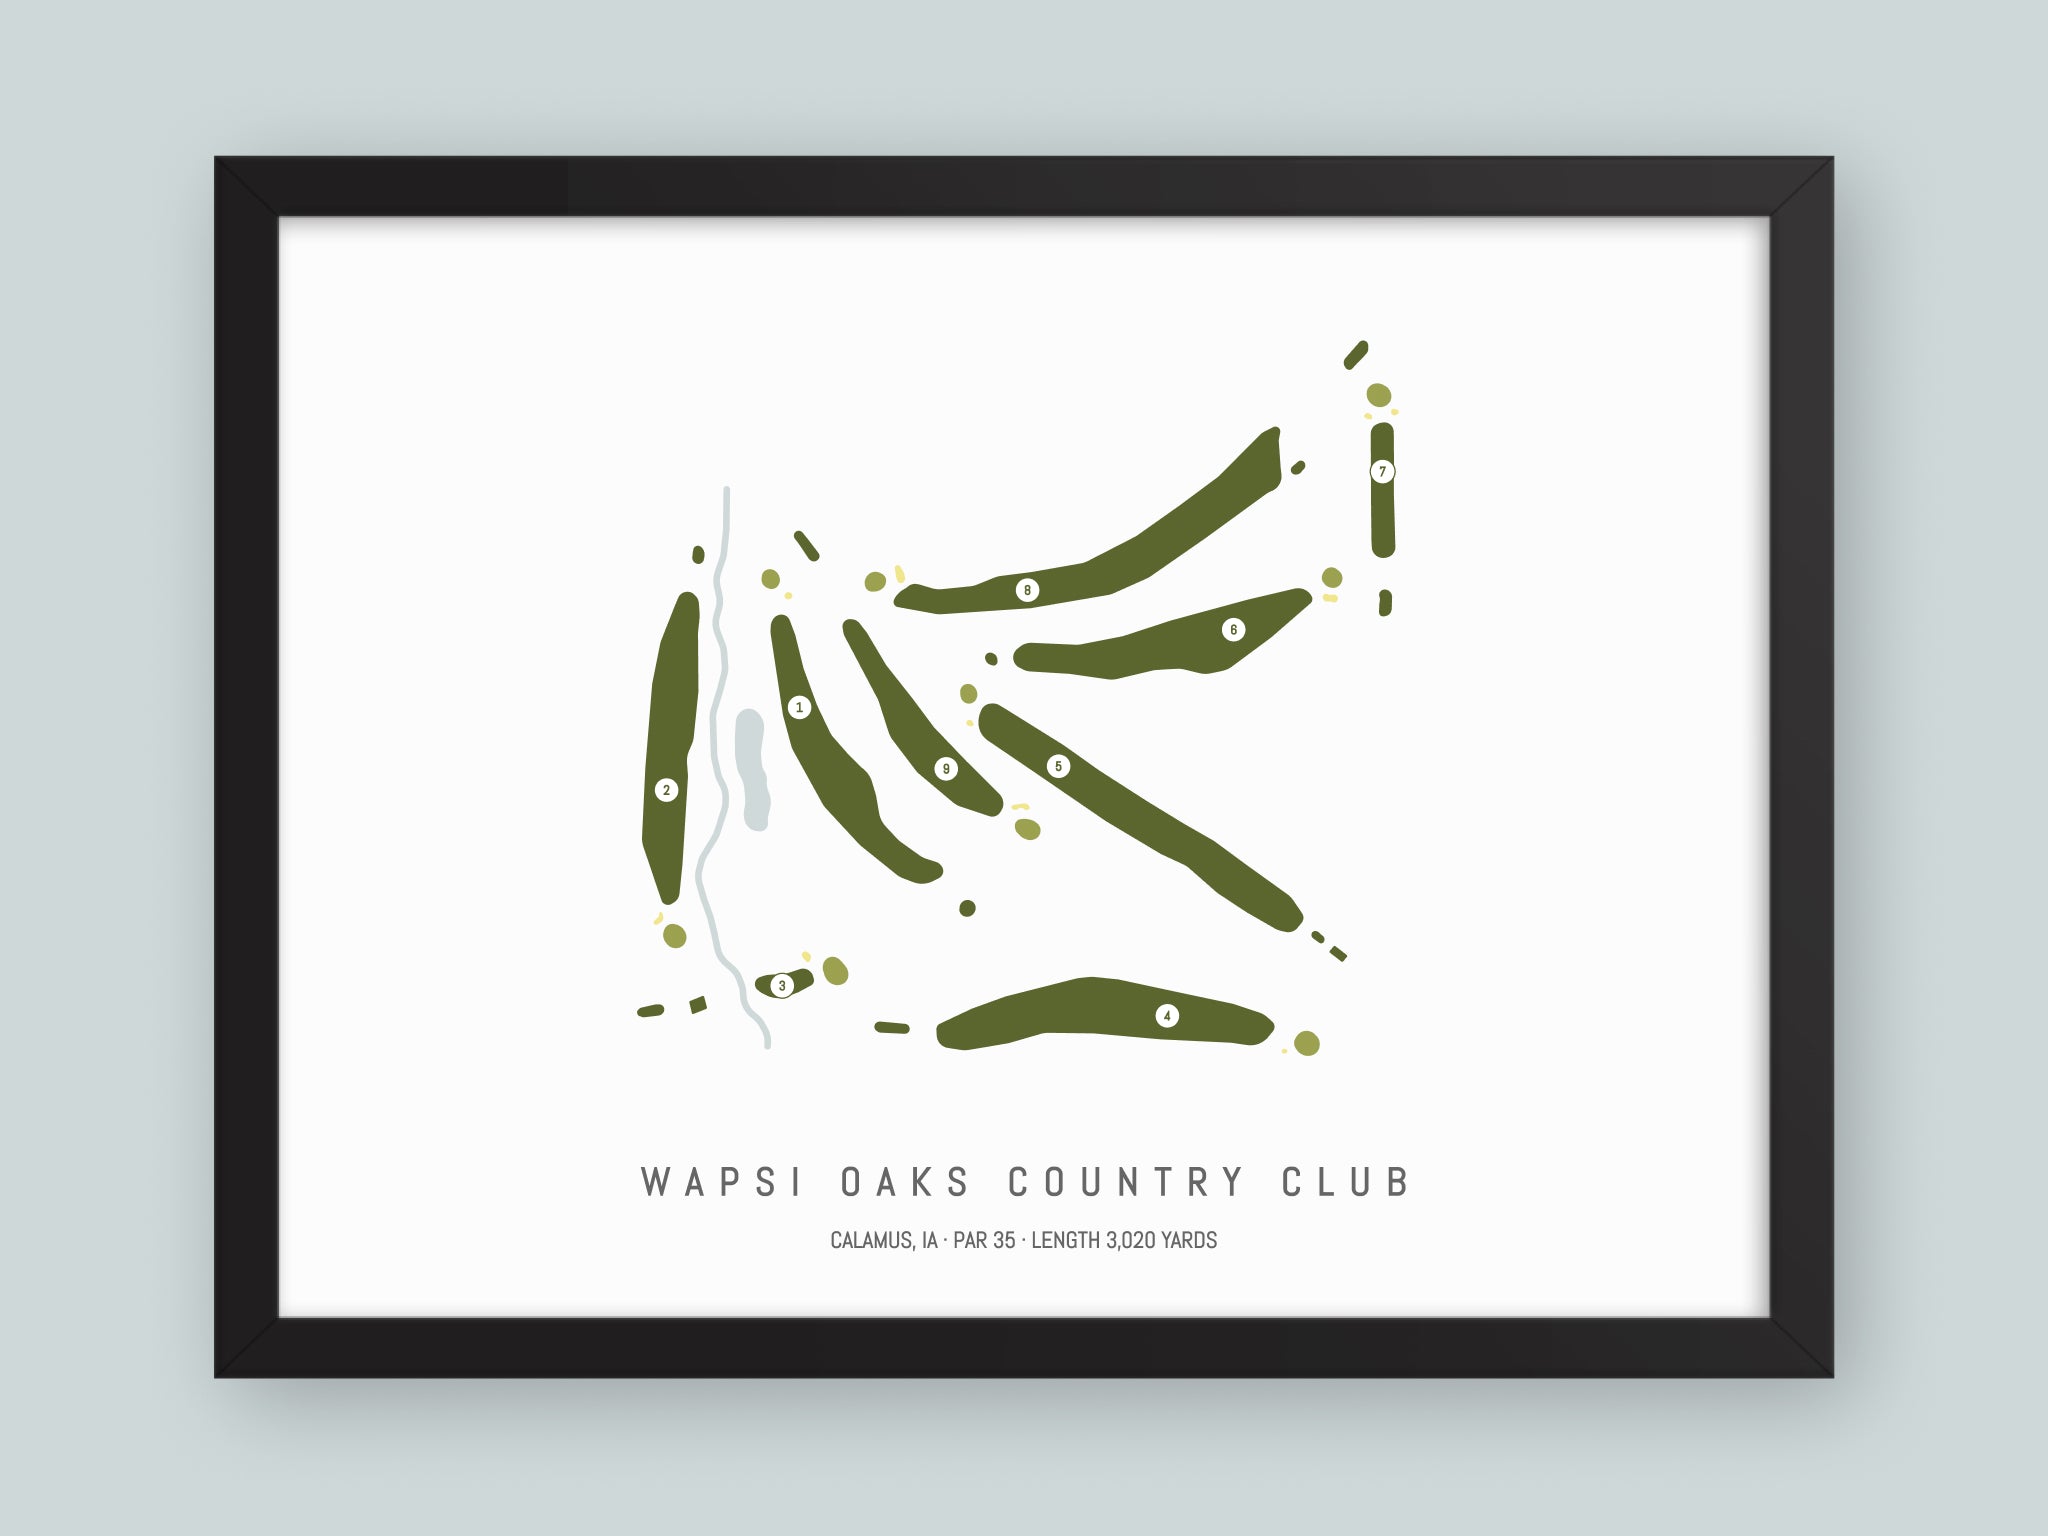 Wapsi-Oaks-Country-Club-IA--Black-Frame-24x18-With-Hole-Numbers